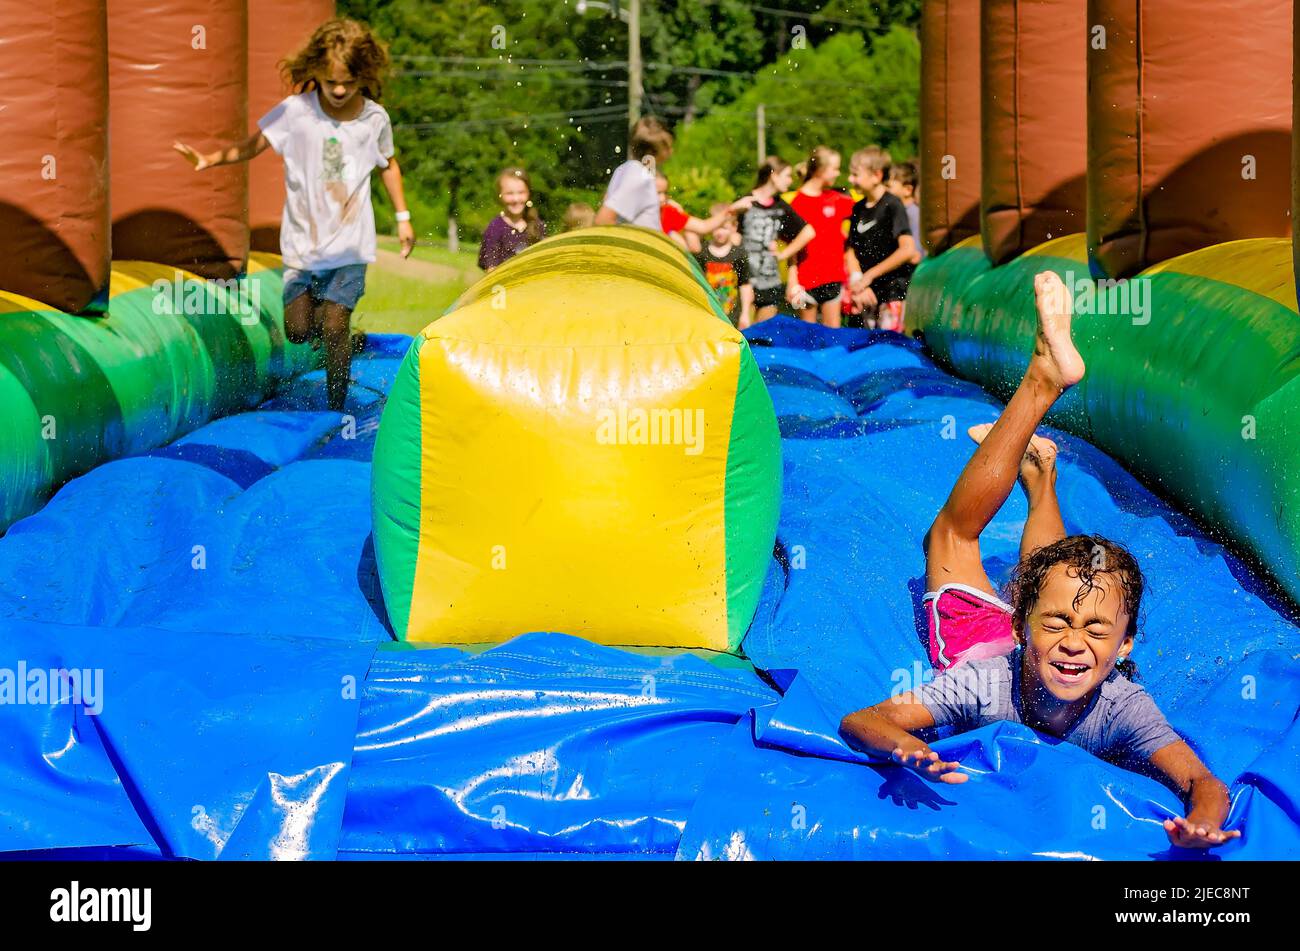 Les enfants jouent sur un toboggan aquatique gonflable, 27 juillet 2012, à Columbus, Mississippi. Banque D'Images